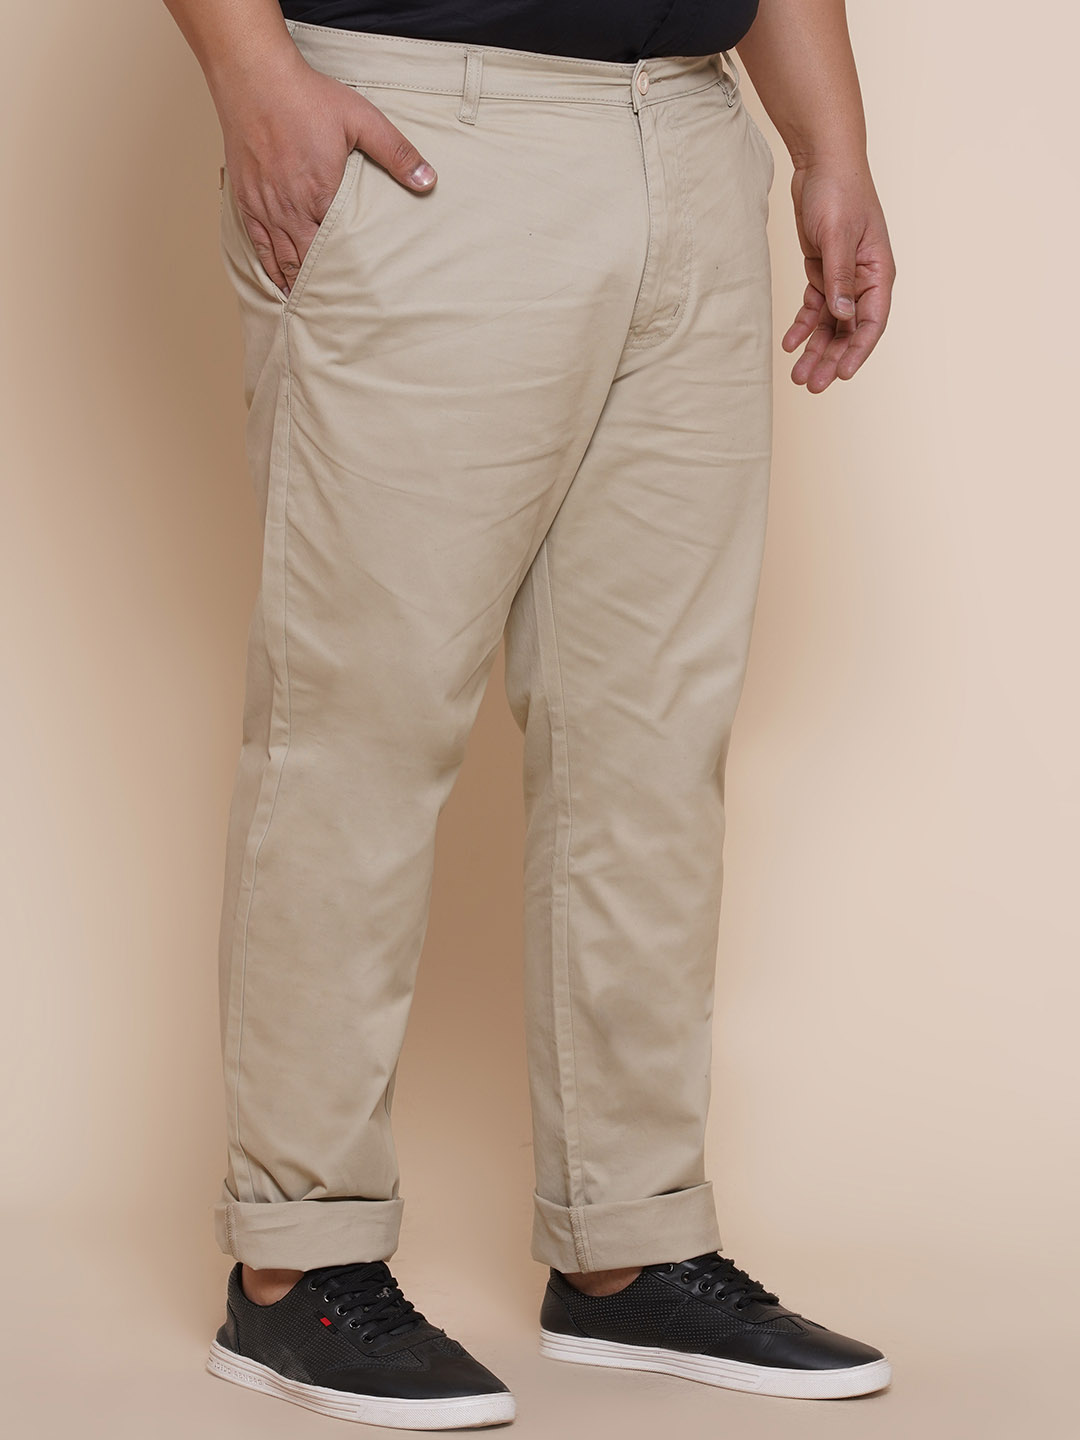 bottomwear/trousers/JPTR2195W/jptr2195w-3.jpg